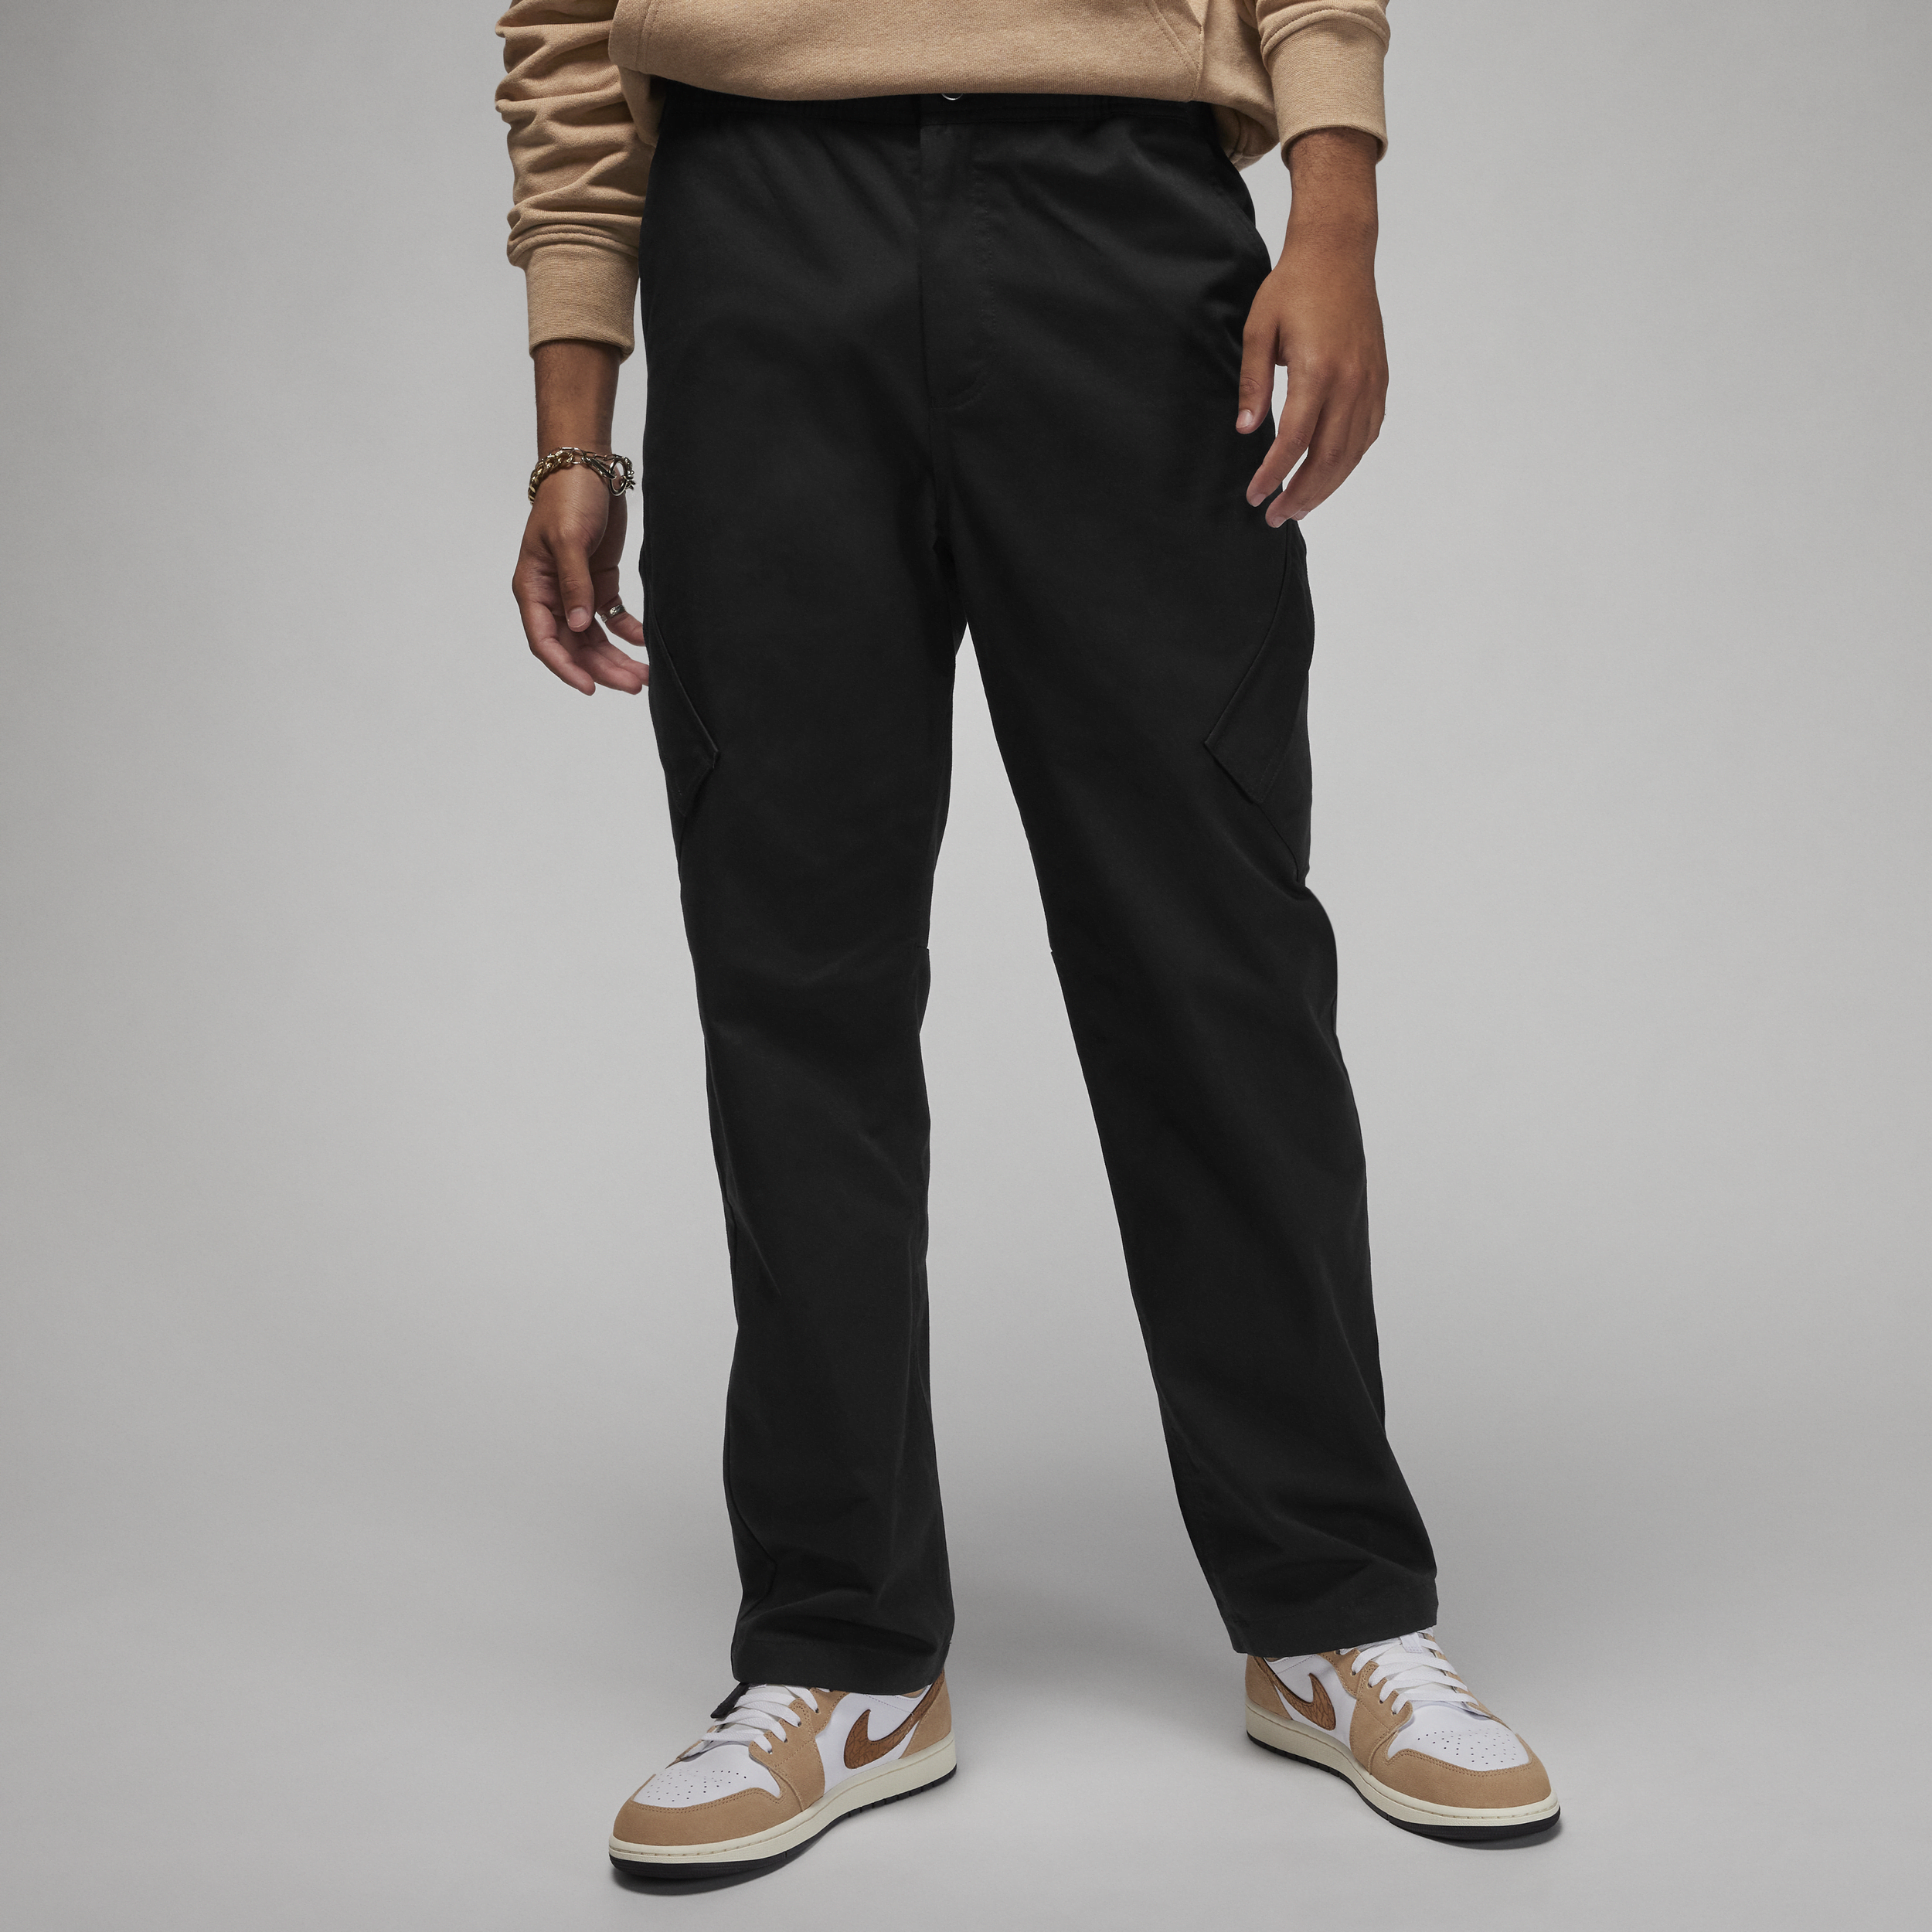 Jordan Essentials Pantalón Chicago - Hombre - Negro